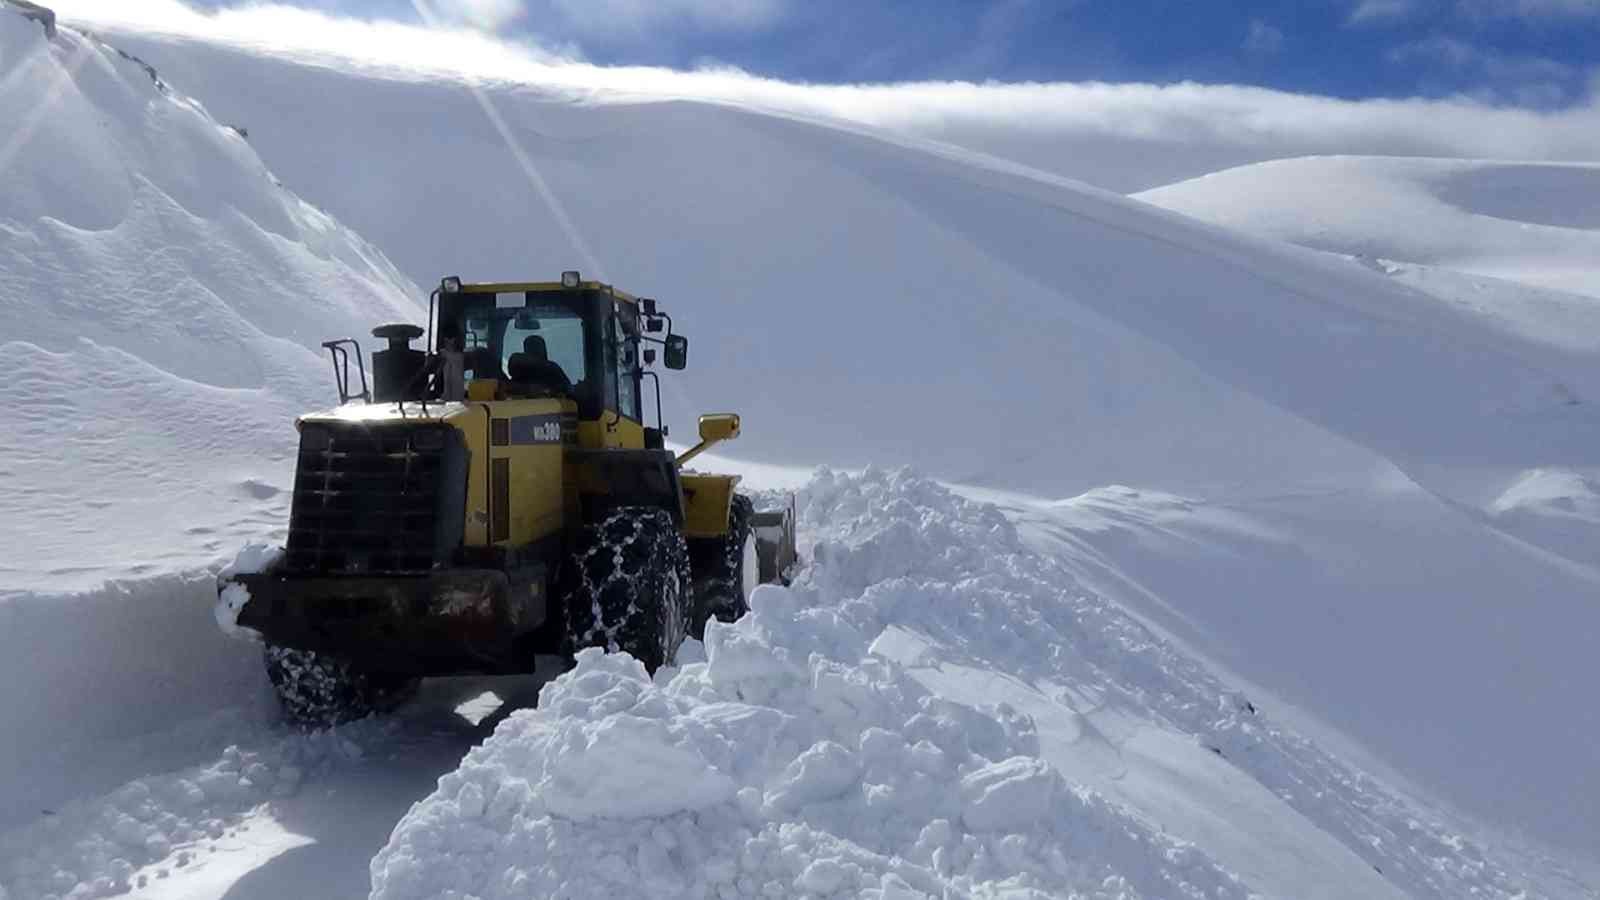 2 bin 500 rakımlı dağ köylerinde 5 metre karla mücadele sürüyor #mus